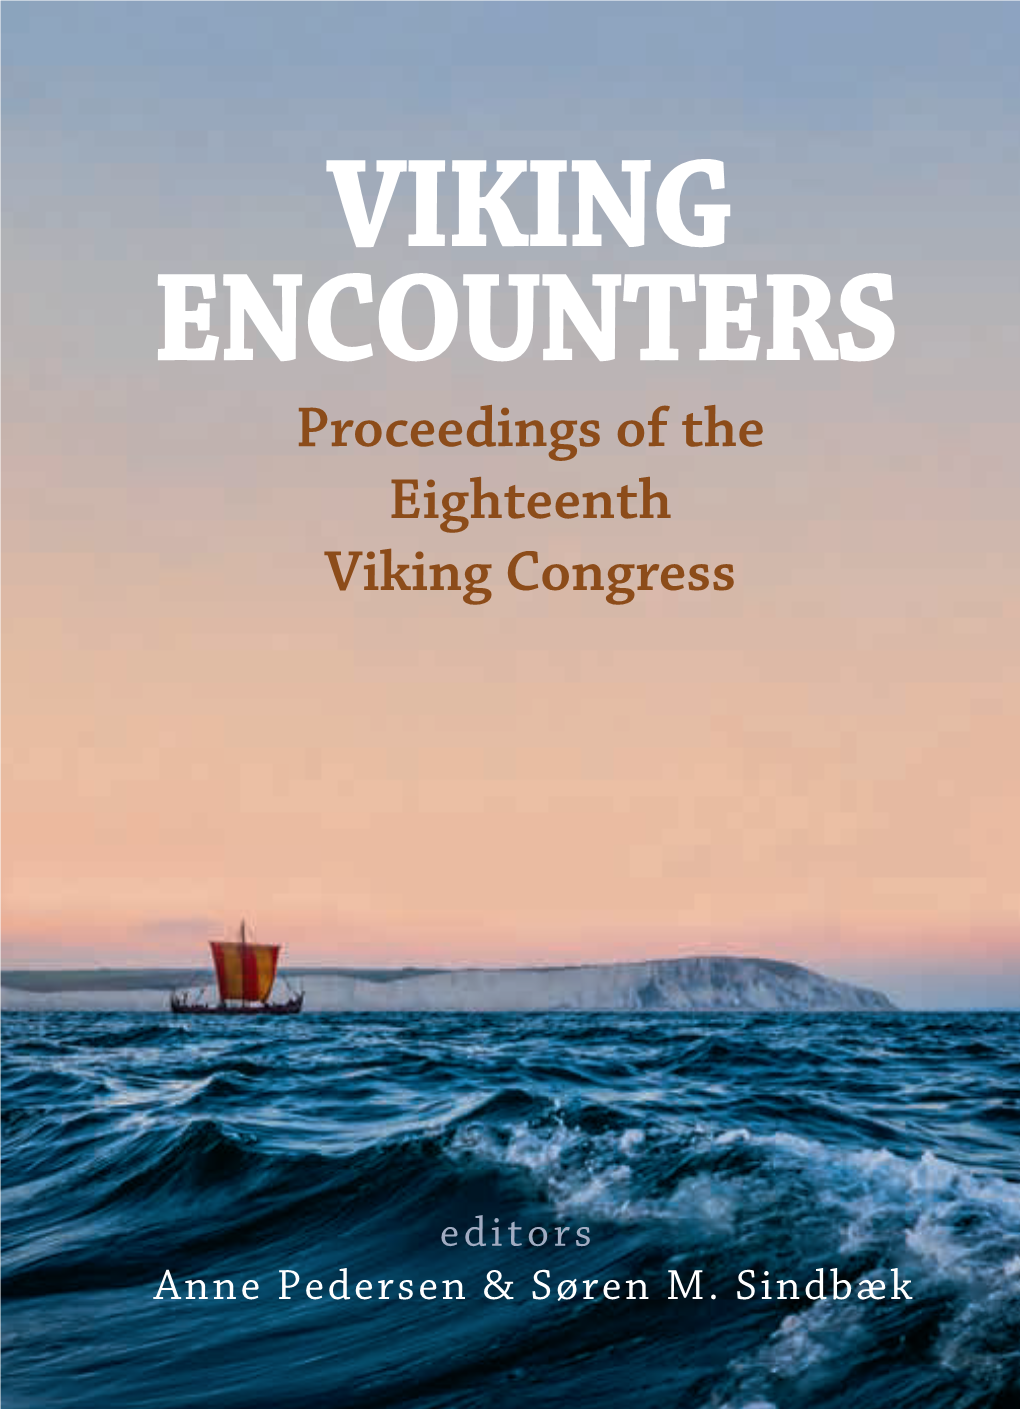 Viking Encounters R1.Indd 1 05/09/2020 11.50 Viking Encounters